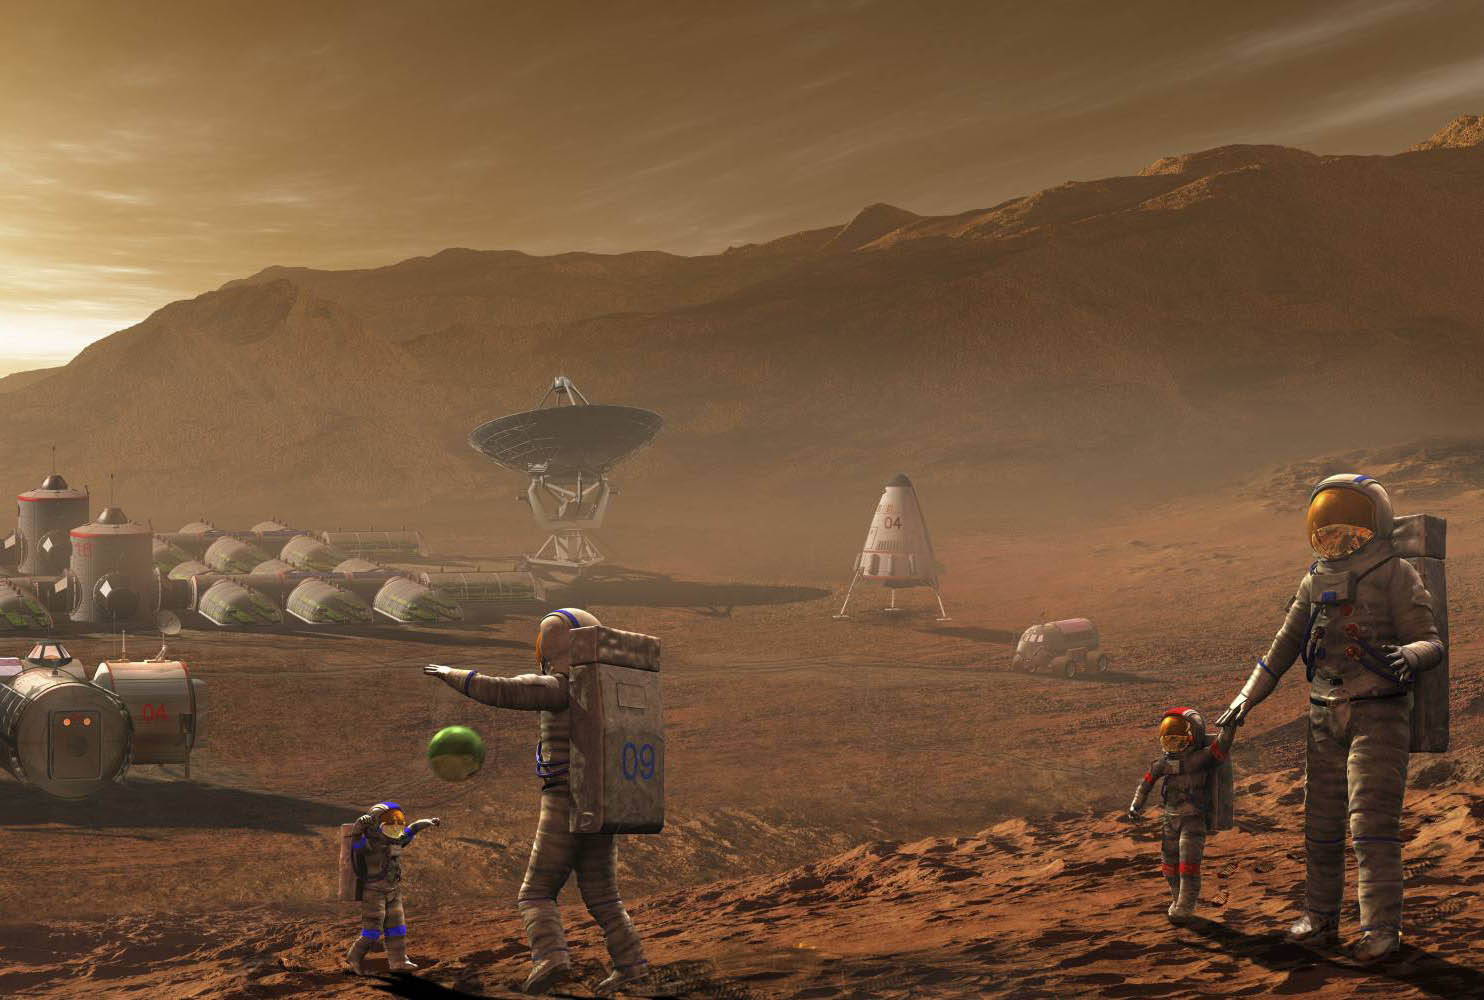 Игра жизнь планет. Колонизация Марса 2050. Колонизация планет Марс. Марс Планета колонизация. Колонизация Марса Илон Маск.